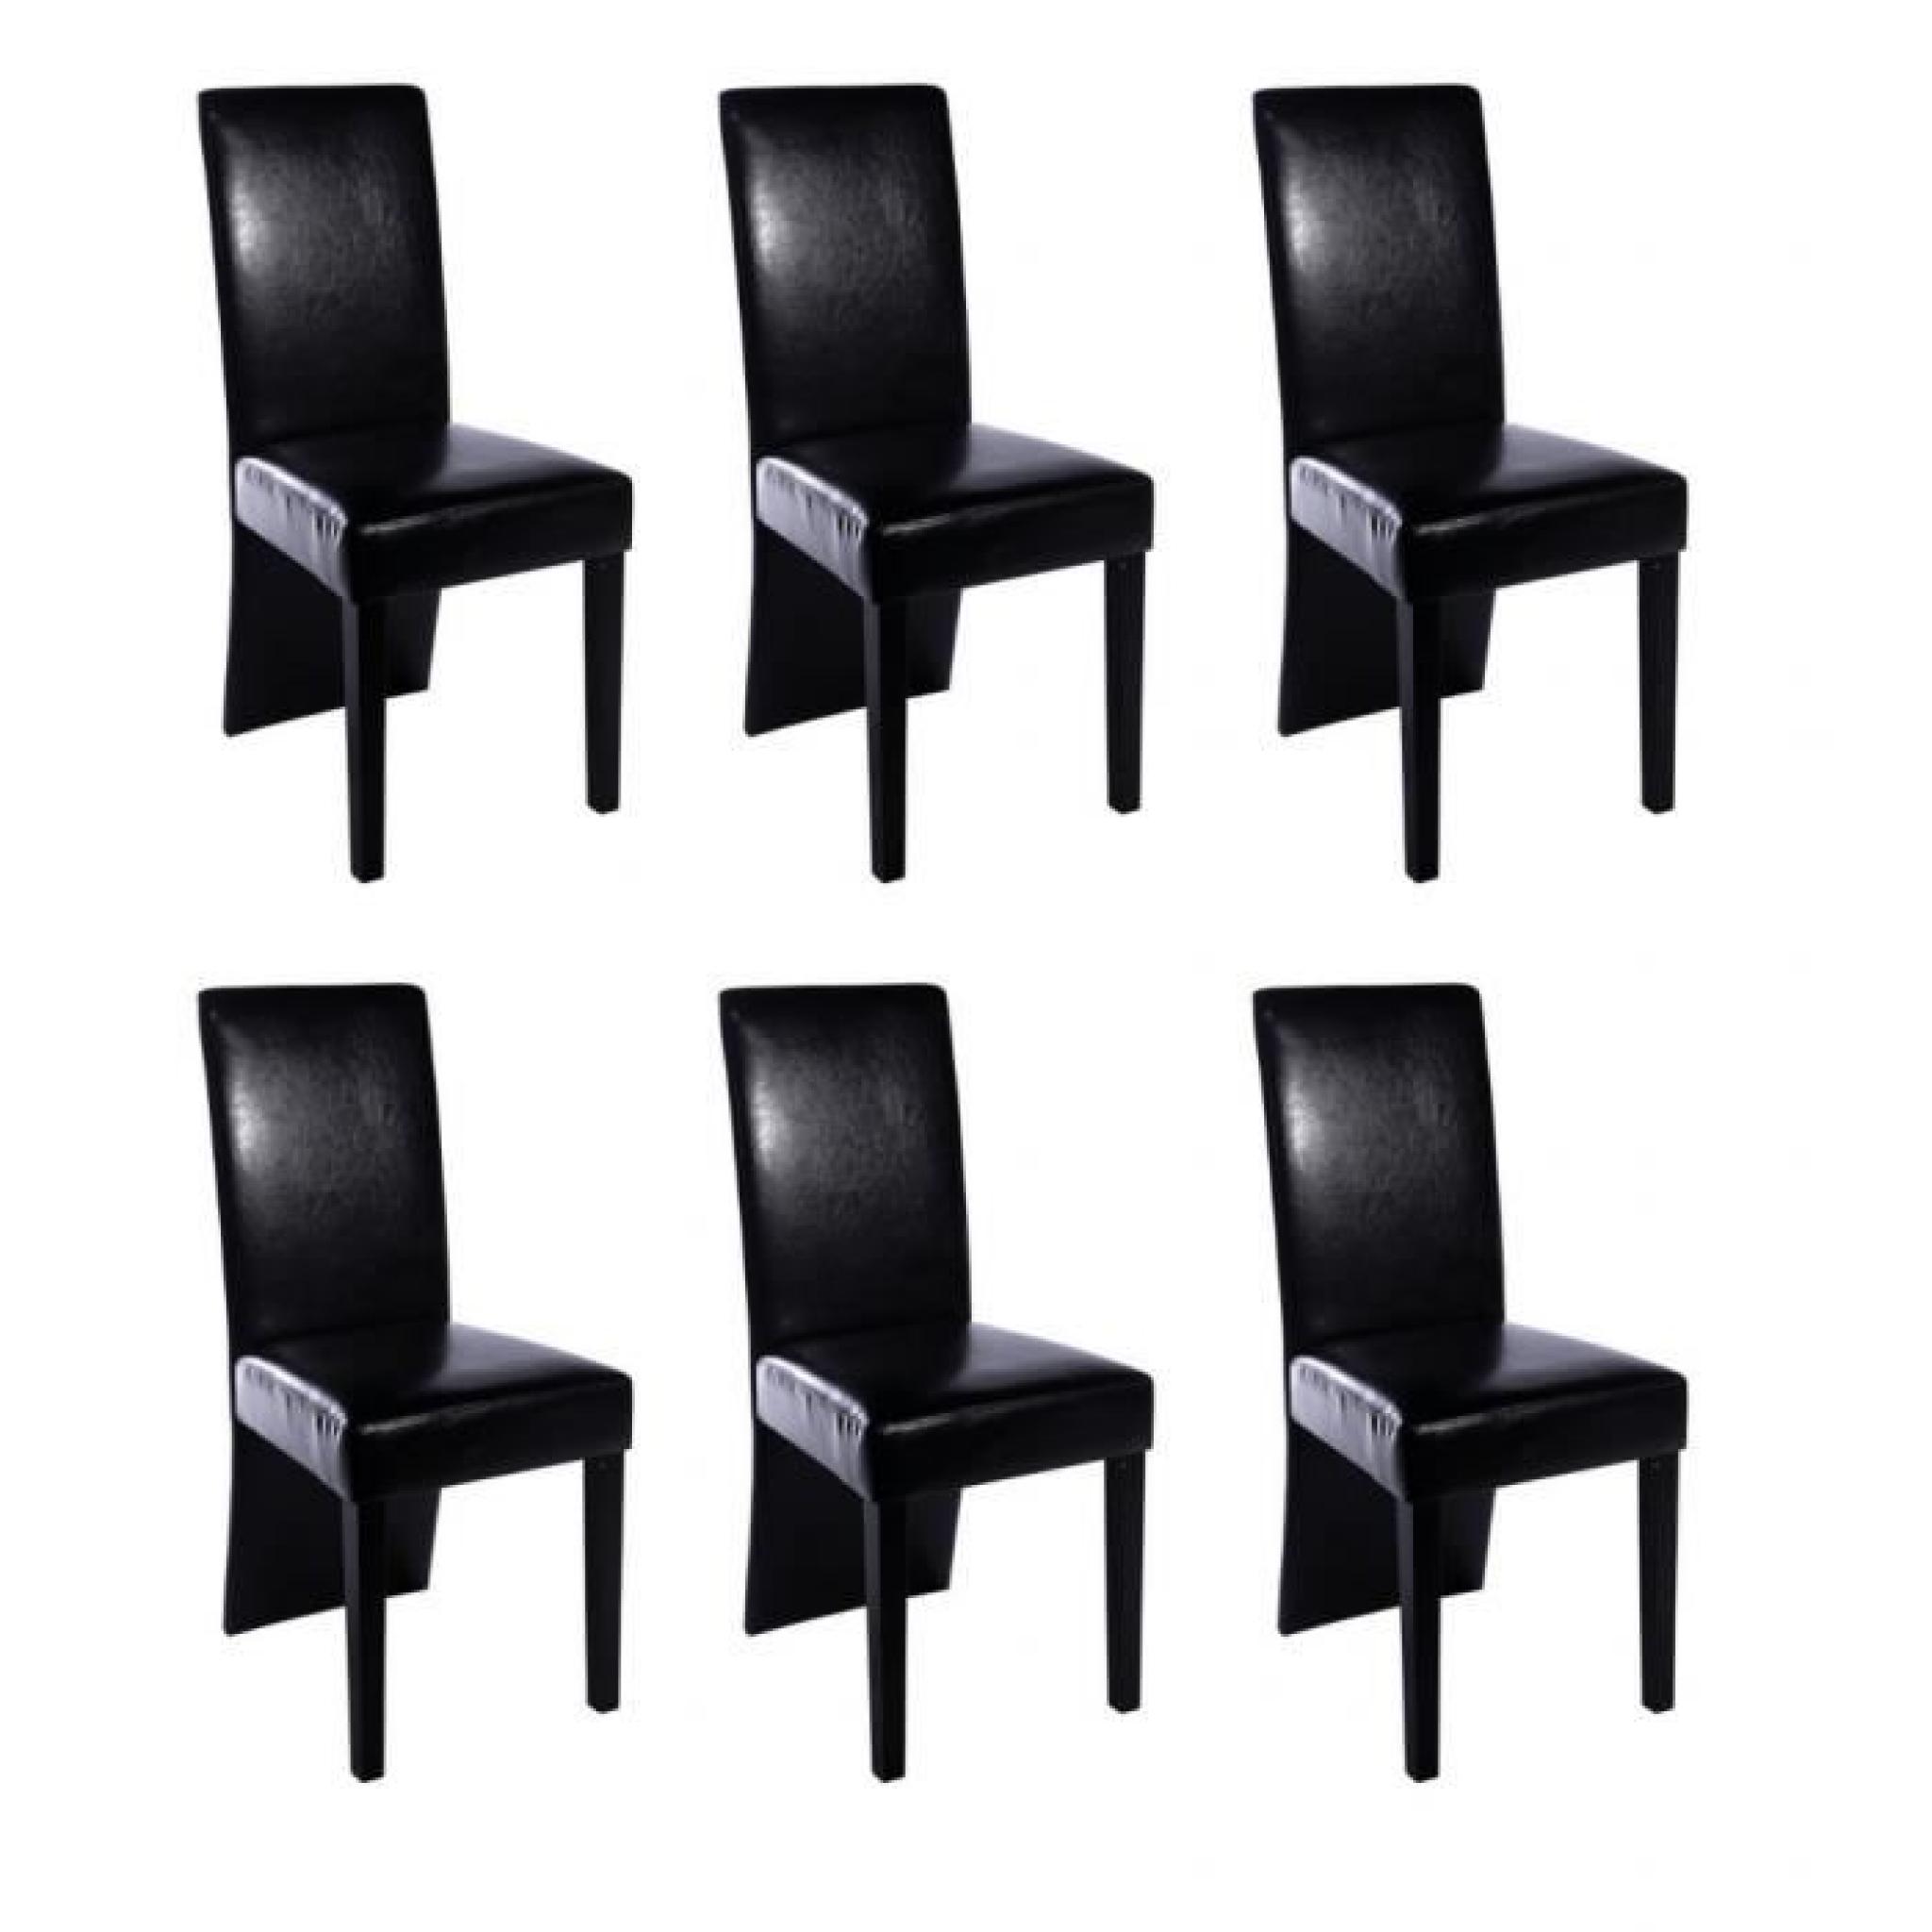 Chaise design bois noir (lot de 6)simili cuir bois